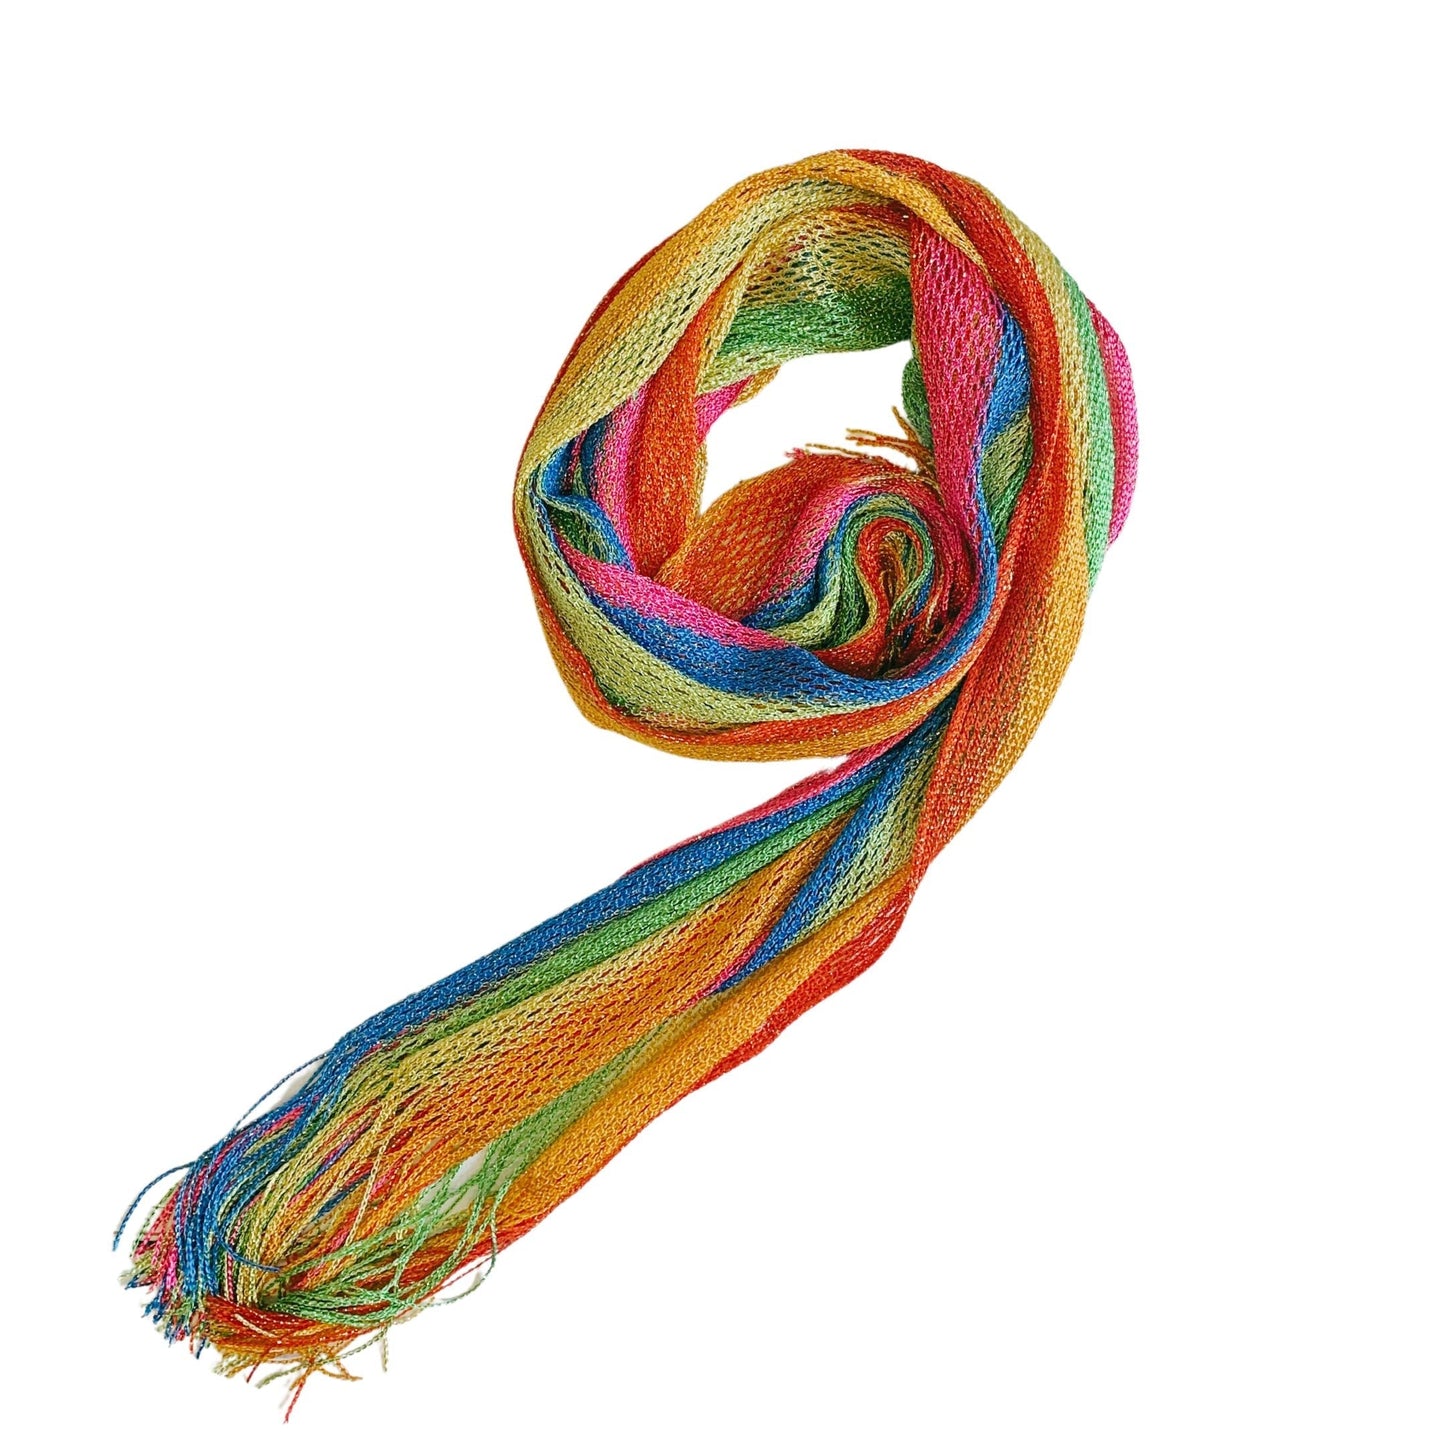 Shimmer Mesh Pride Scarf Wrap in Rainbow Stripe | Unisex Summer Shawl LGBTQ Pride